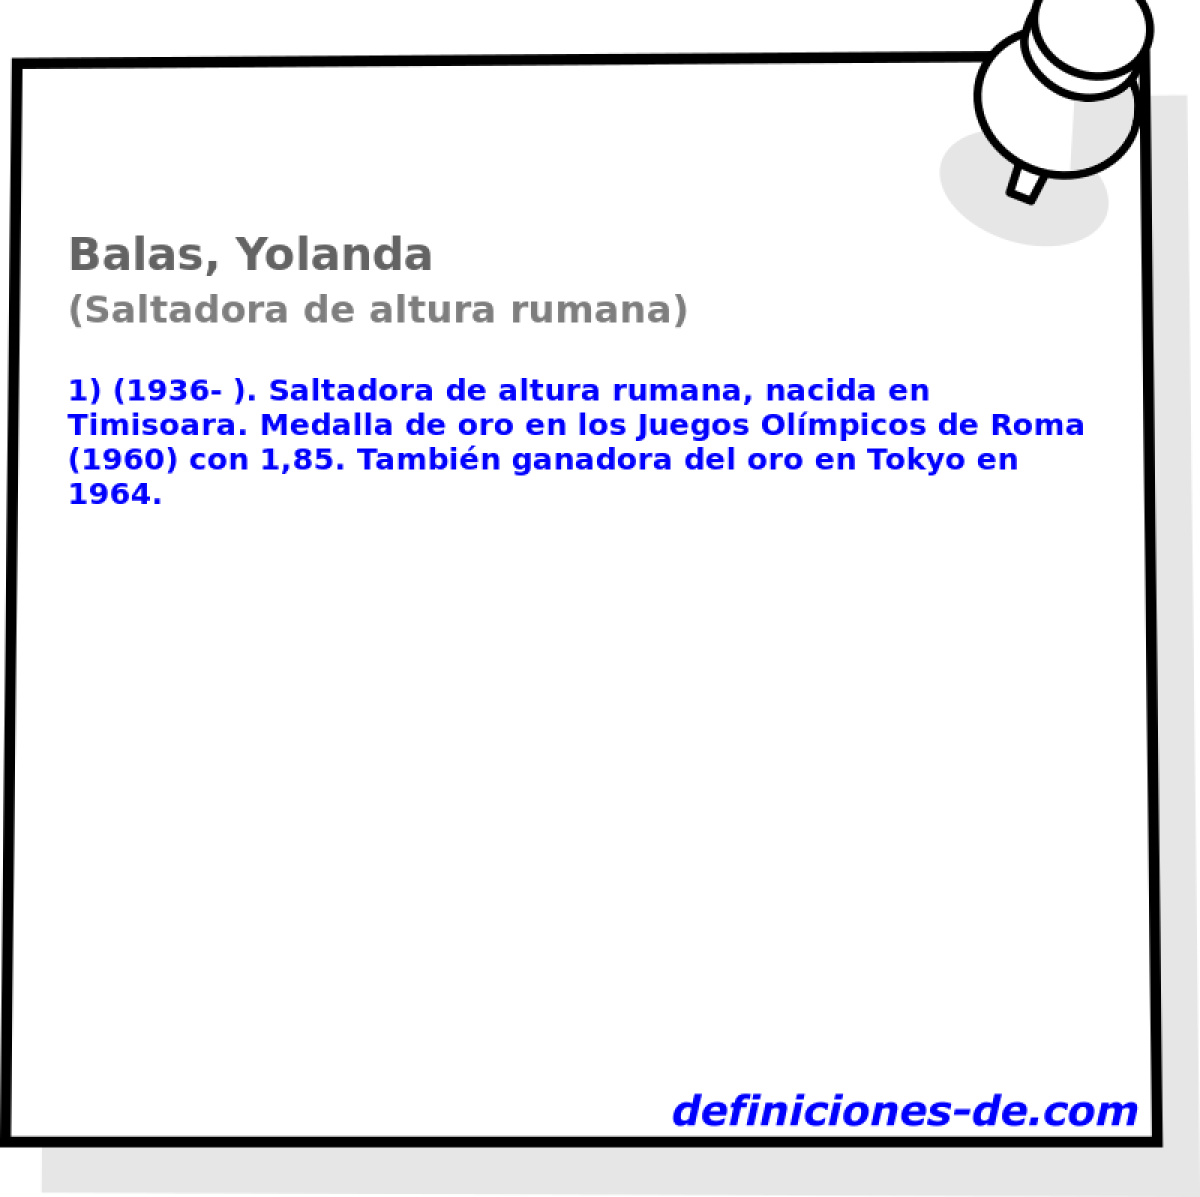 Balas, Yolanda (Saltadora de altura rumana)